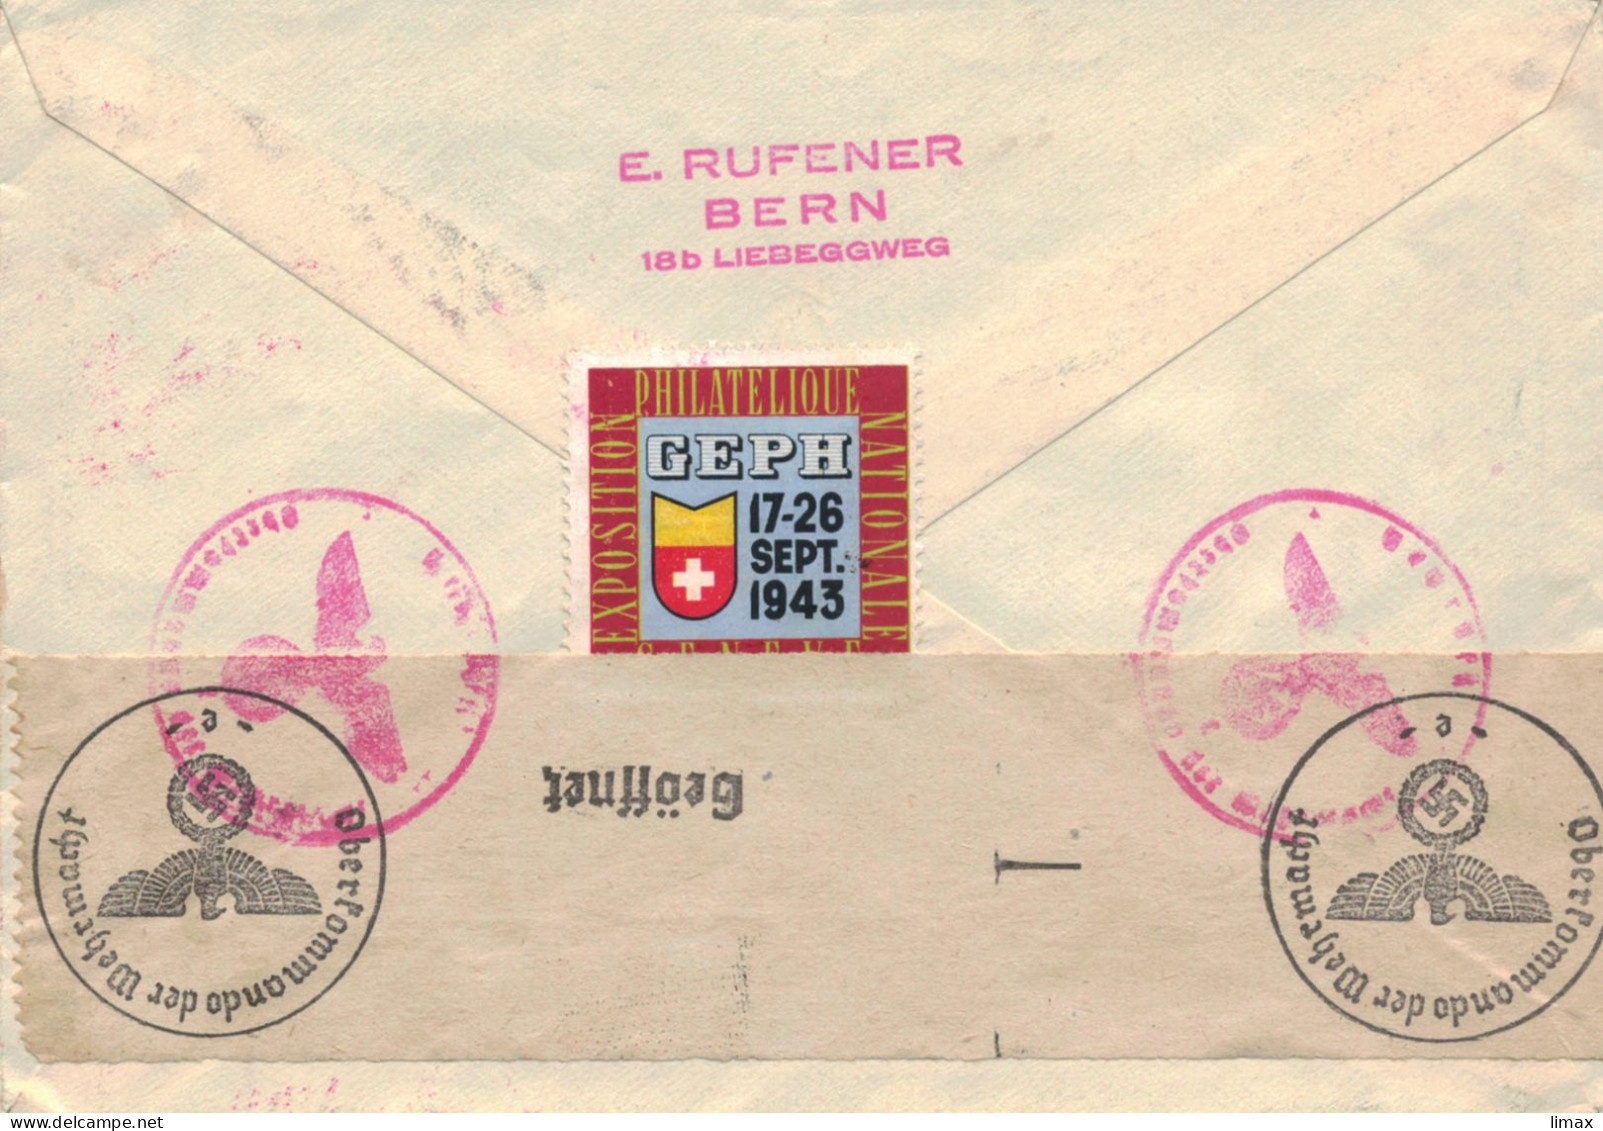 Rufener Zürich 1943 Reko > Schiedam - Zensur OKW - 100 Jahre Schweizer Postmarken - Briefe U. Dokumente